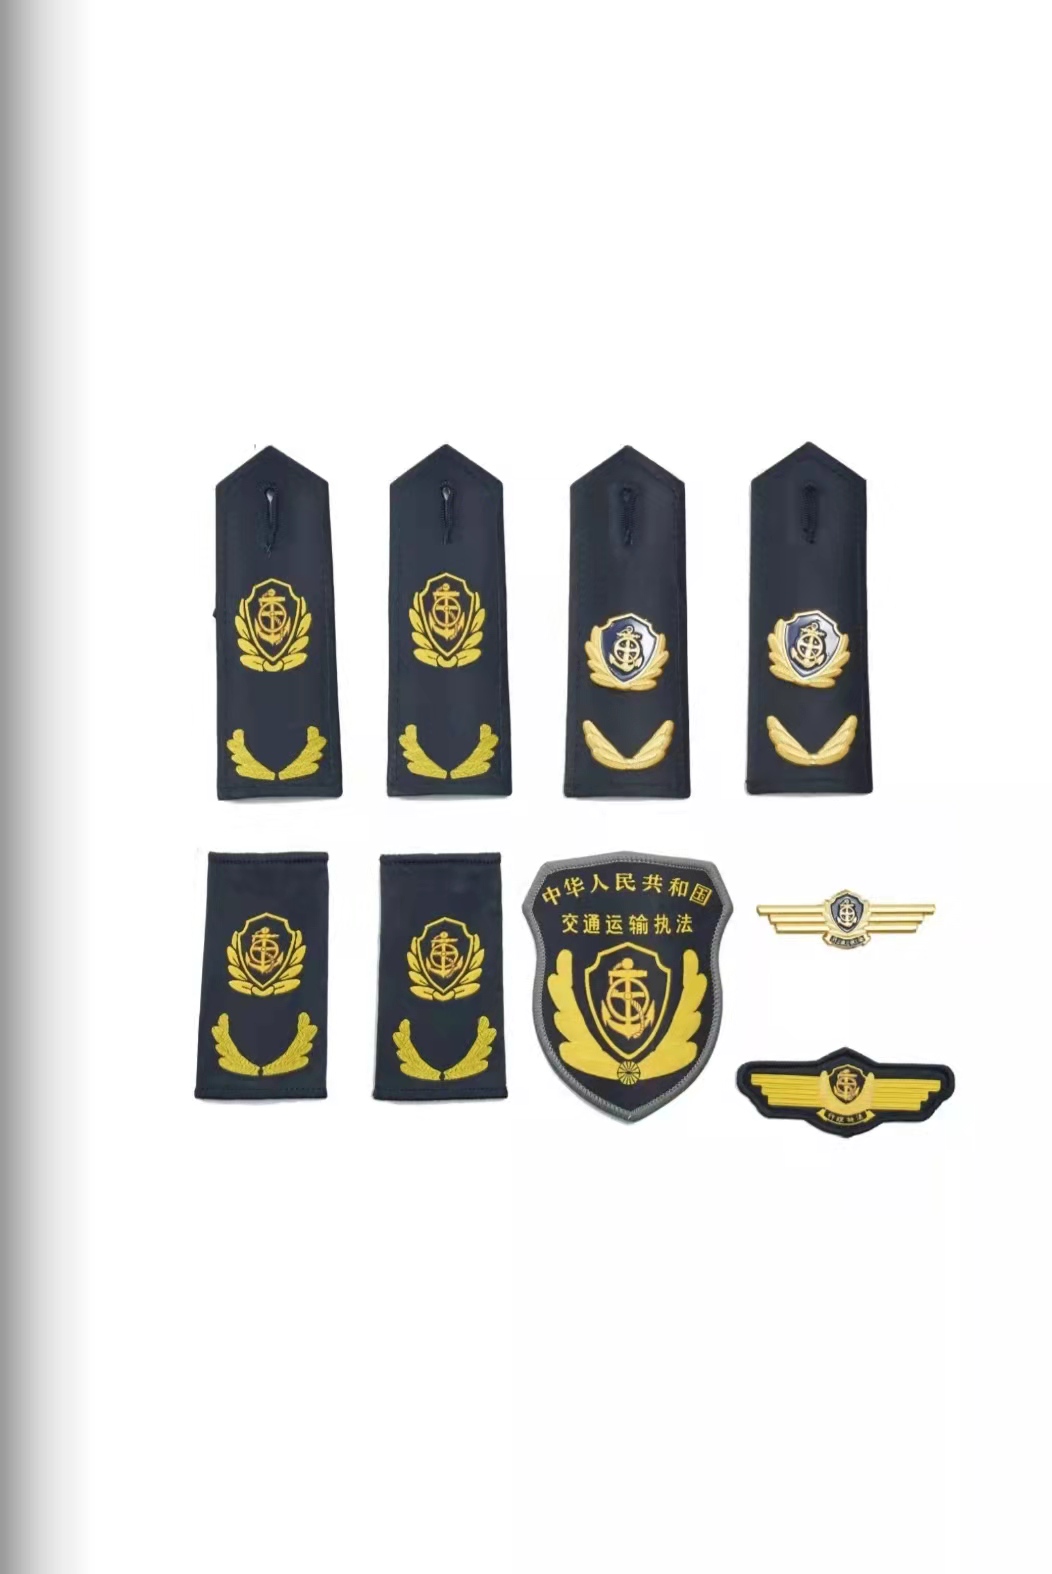 丰台六部门统一交通运输执法服装标志